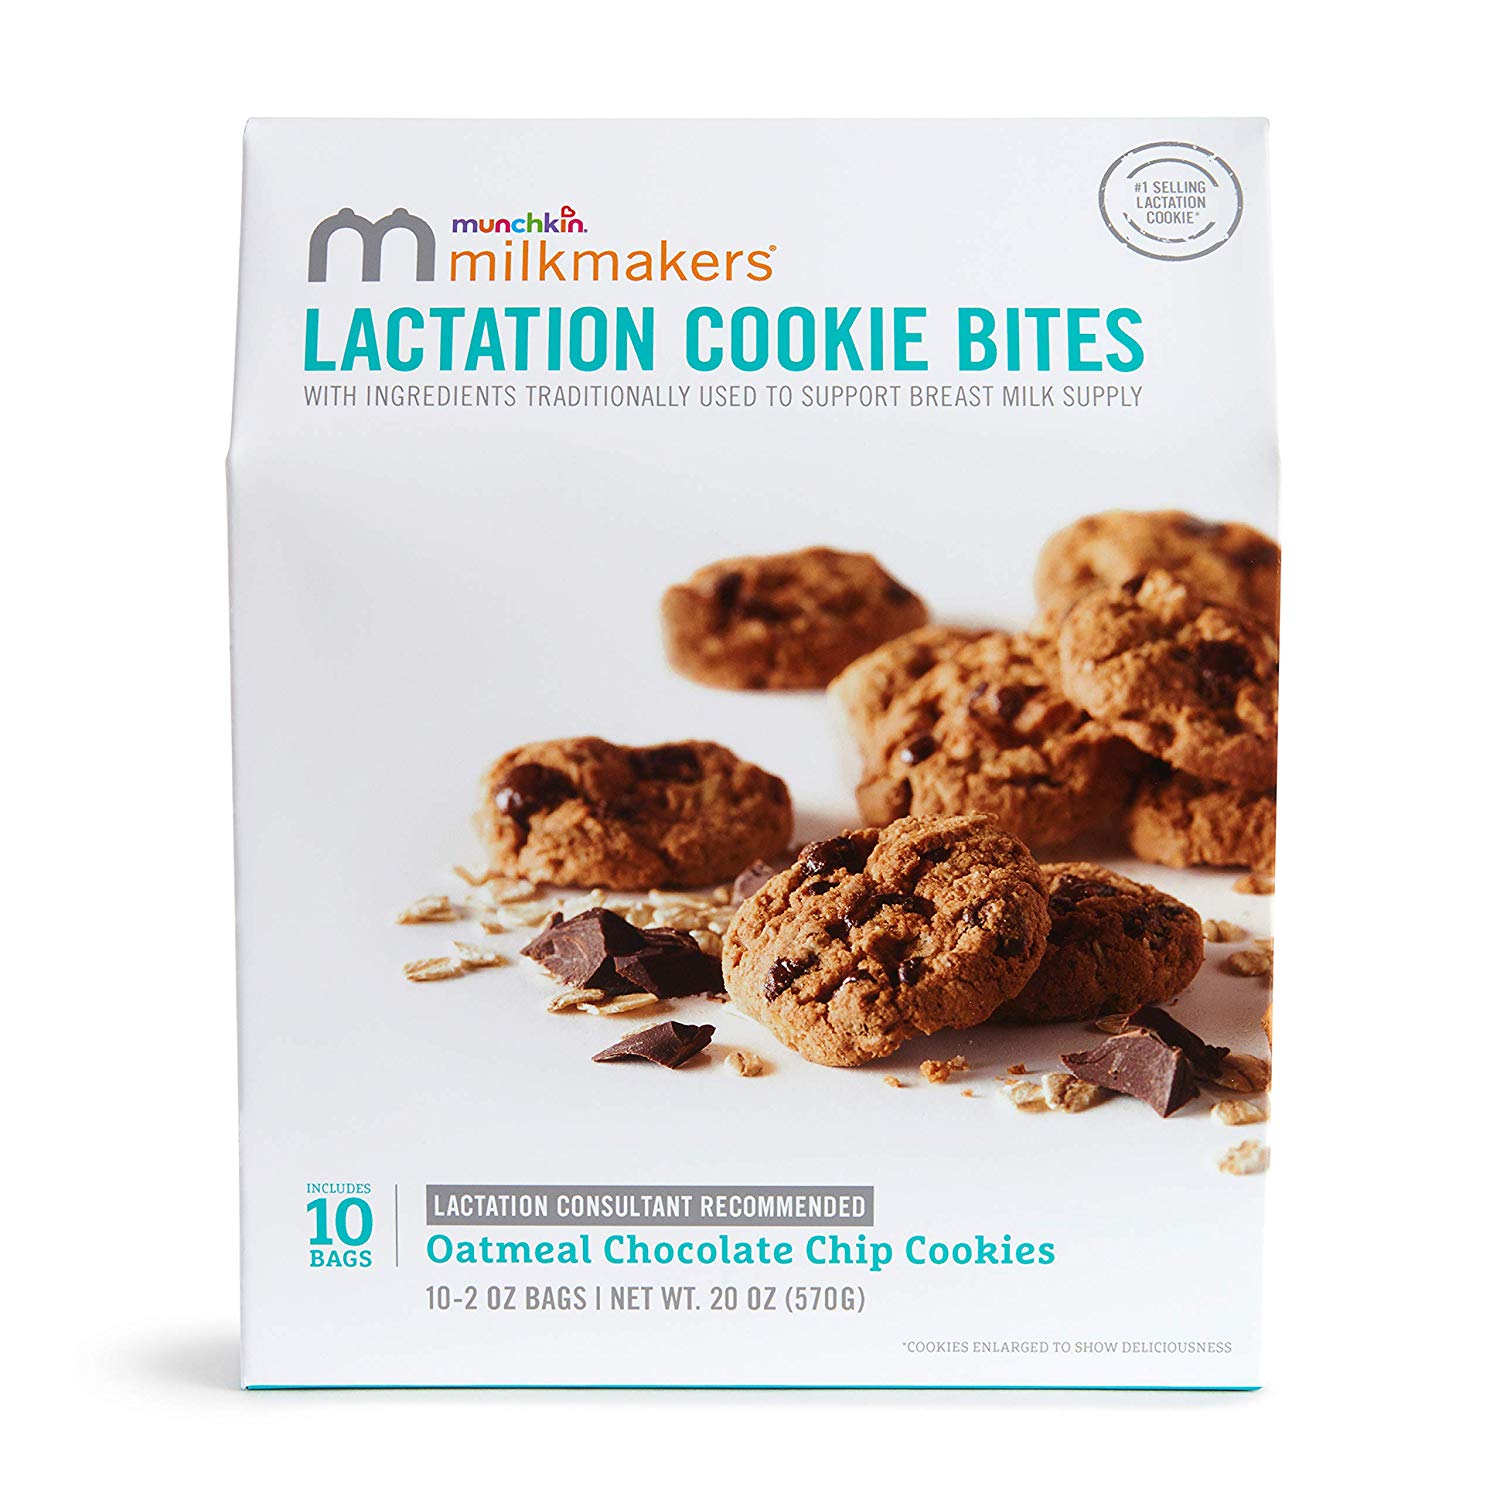 lactation cookies